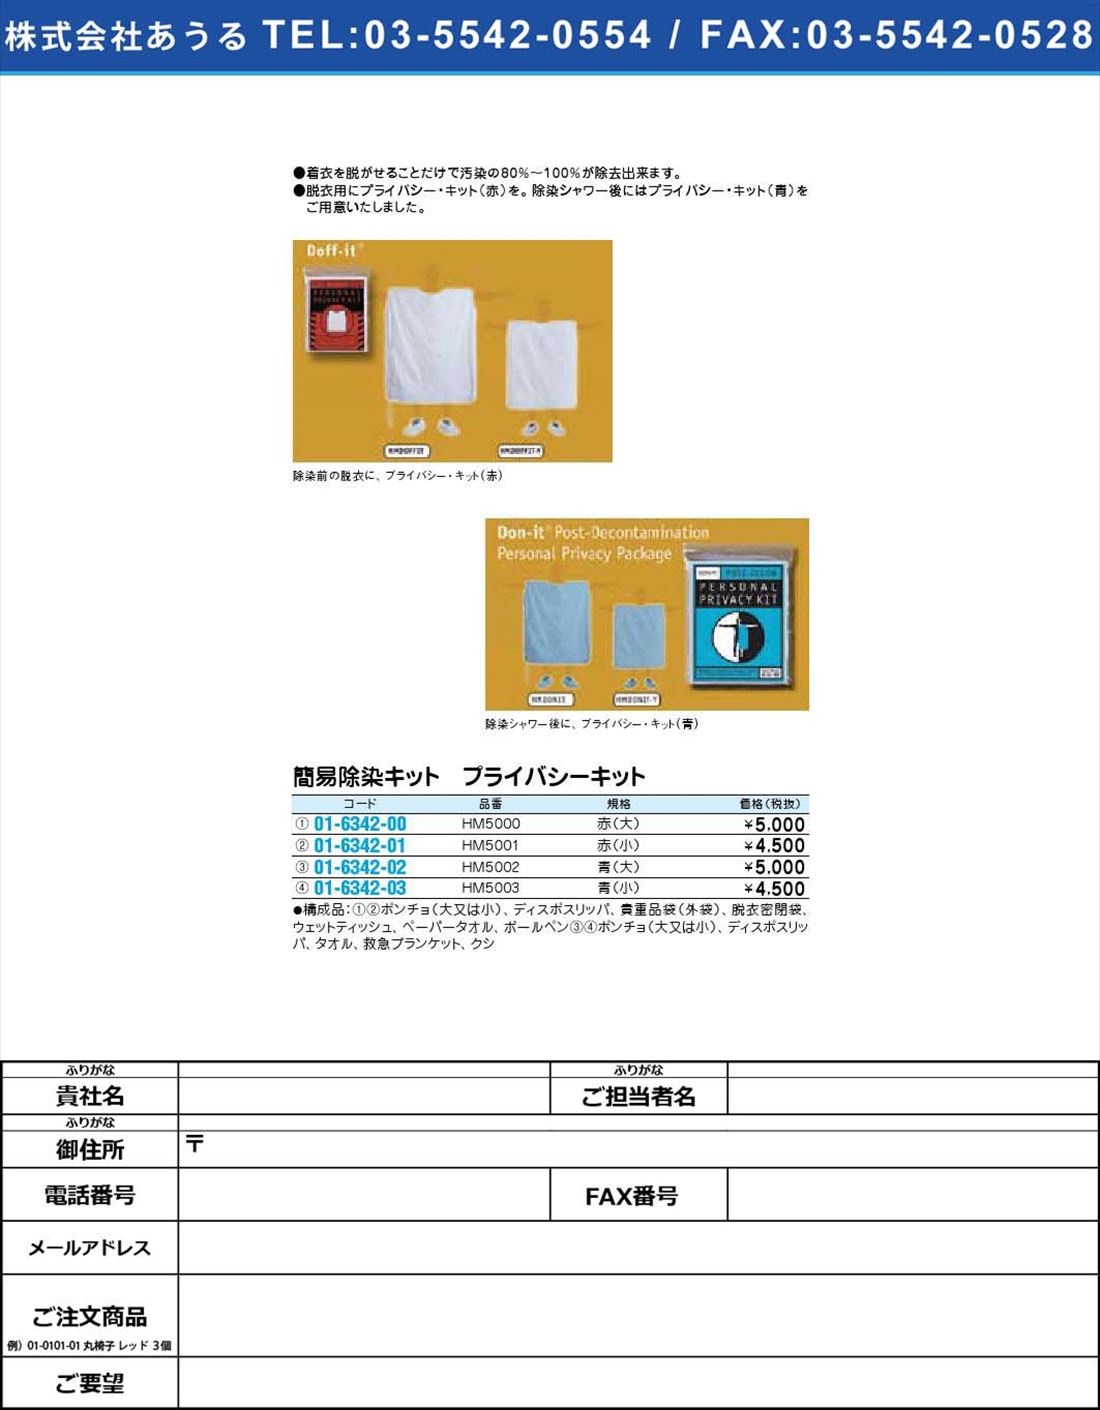 簡易除染キット プライバシーキット HM5001(01-6342-01)【1個単位】